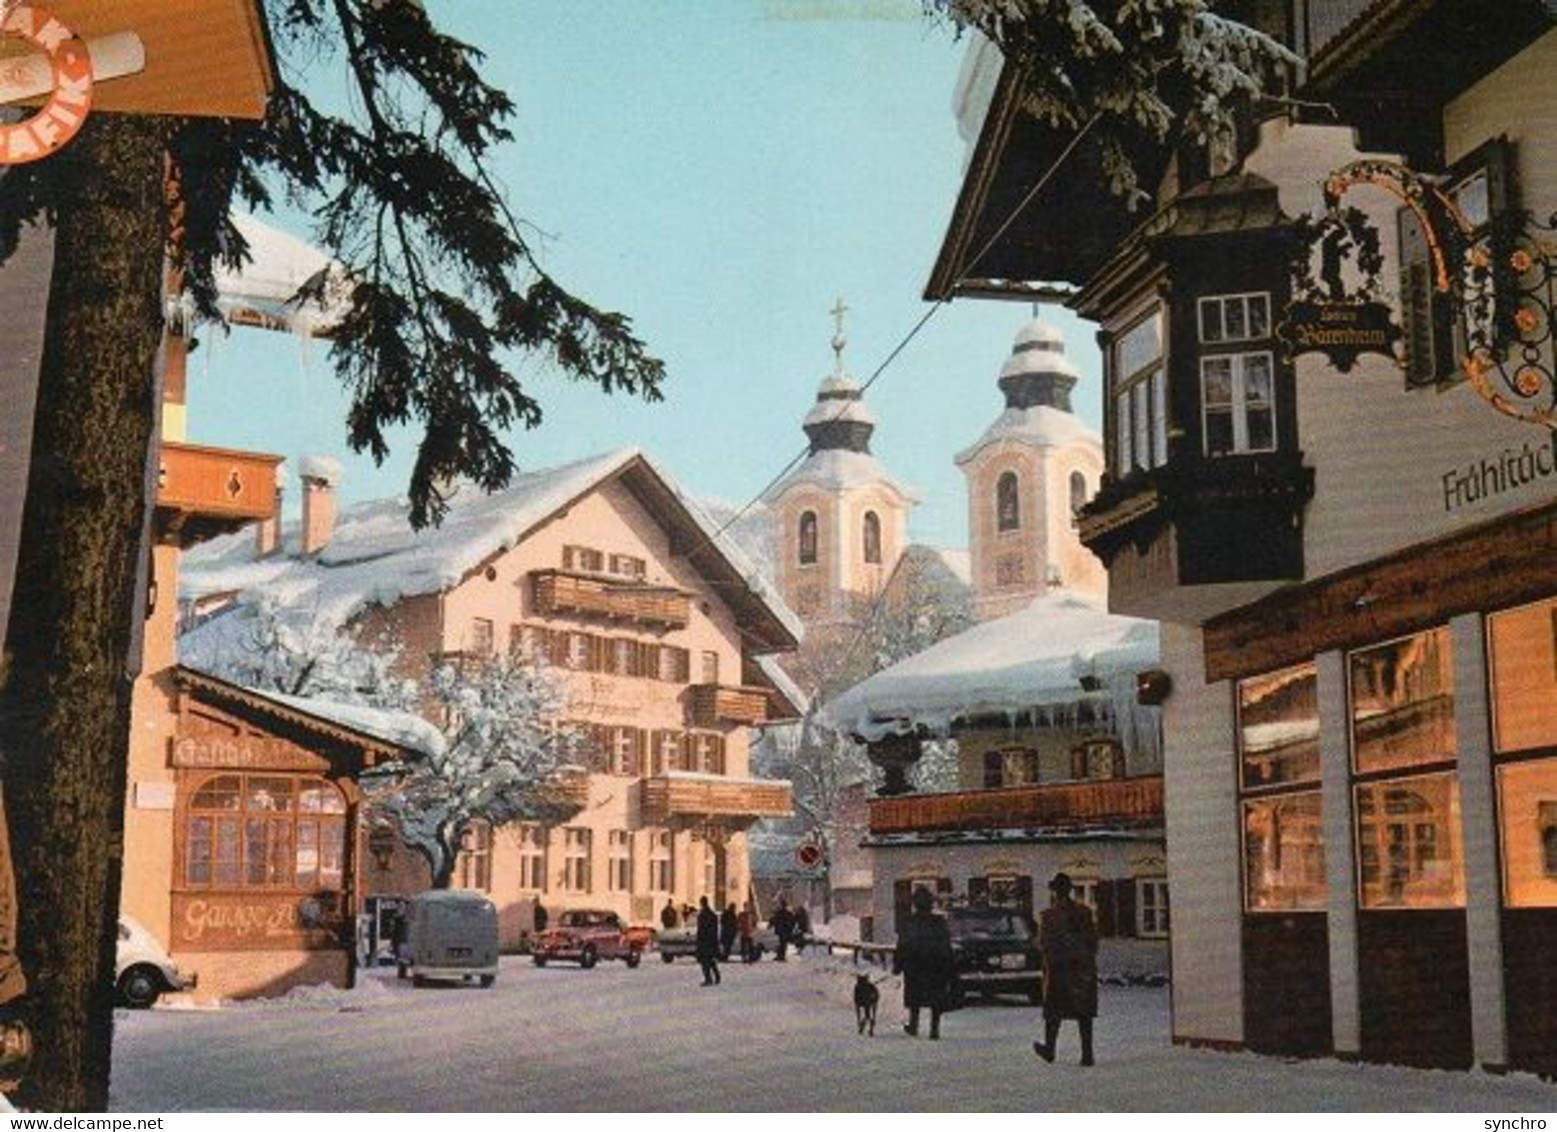 Wintersportplatz - St. Johann In Tirol